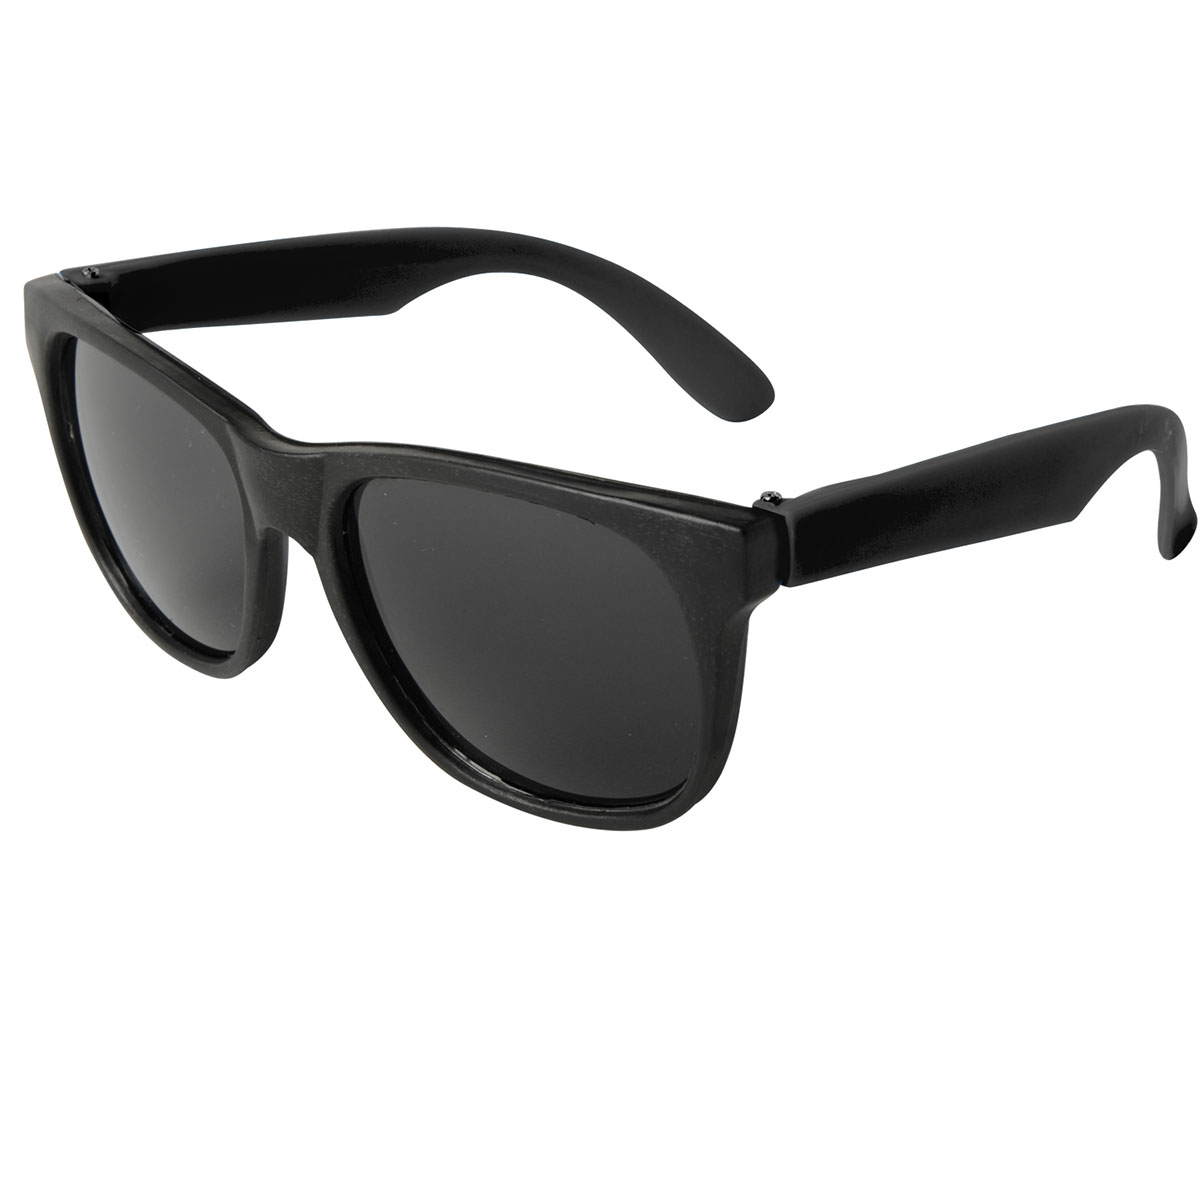 Black Neon Sunglasses